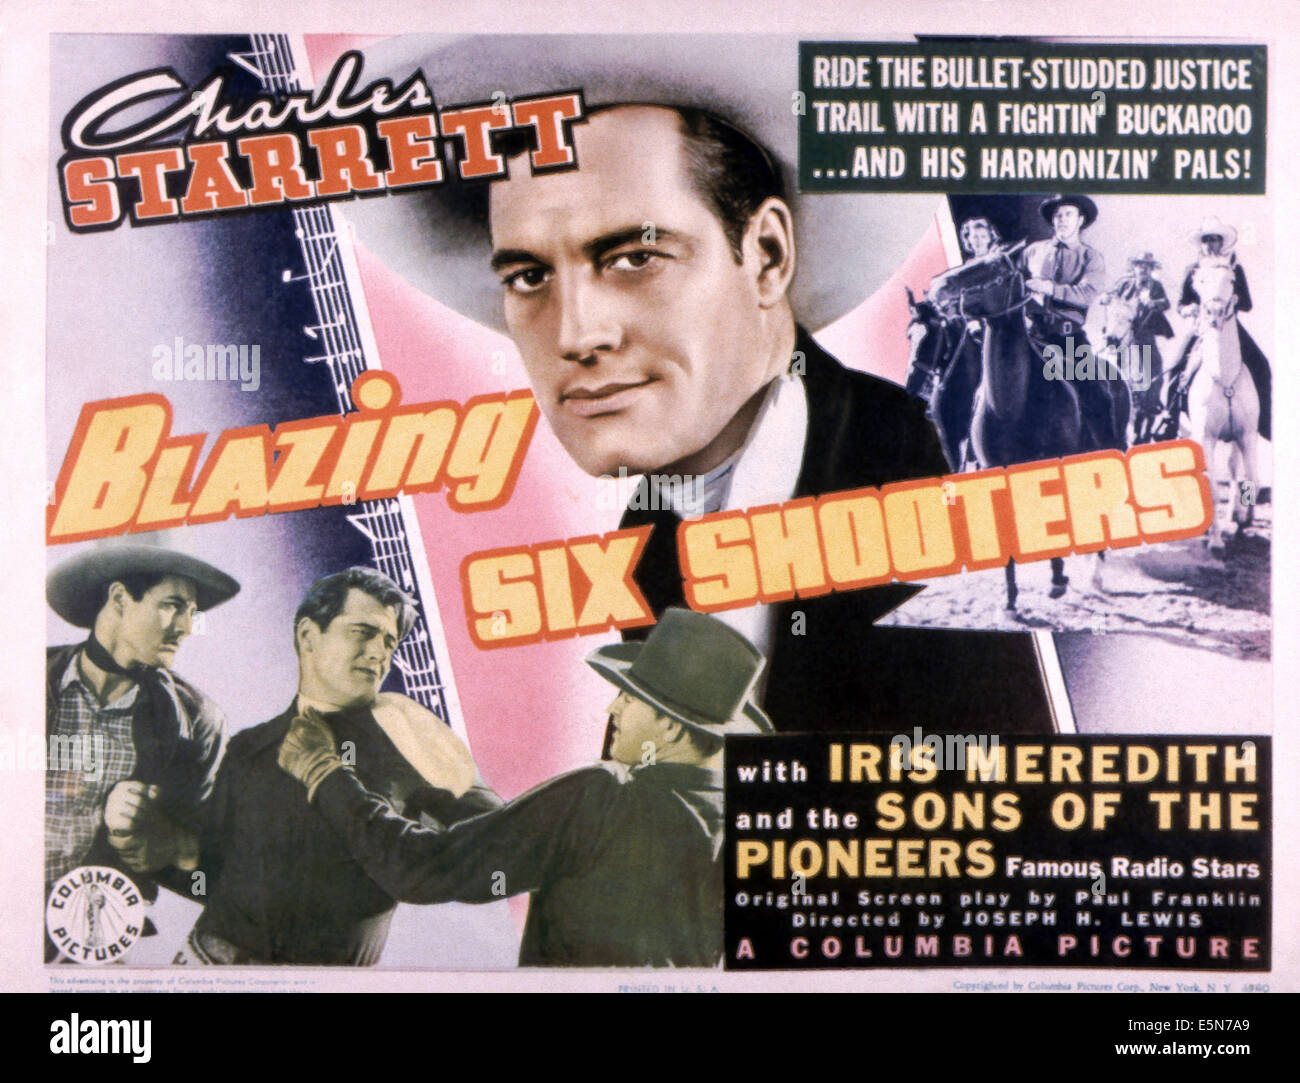 BLAZING sechs schützen, Charles Starrett (Mitte), 1940 Stockfoto